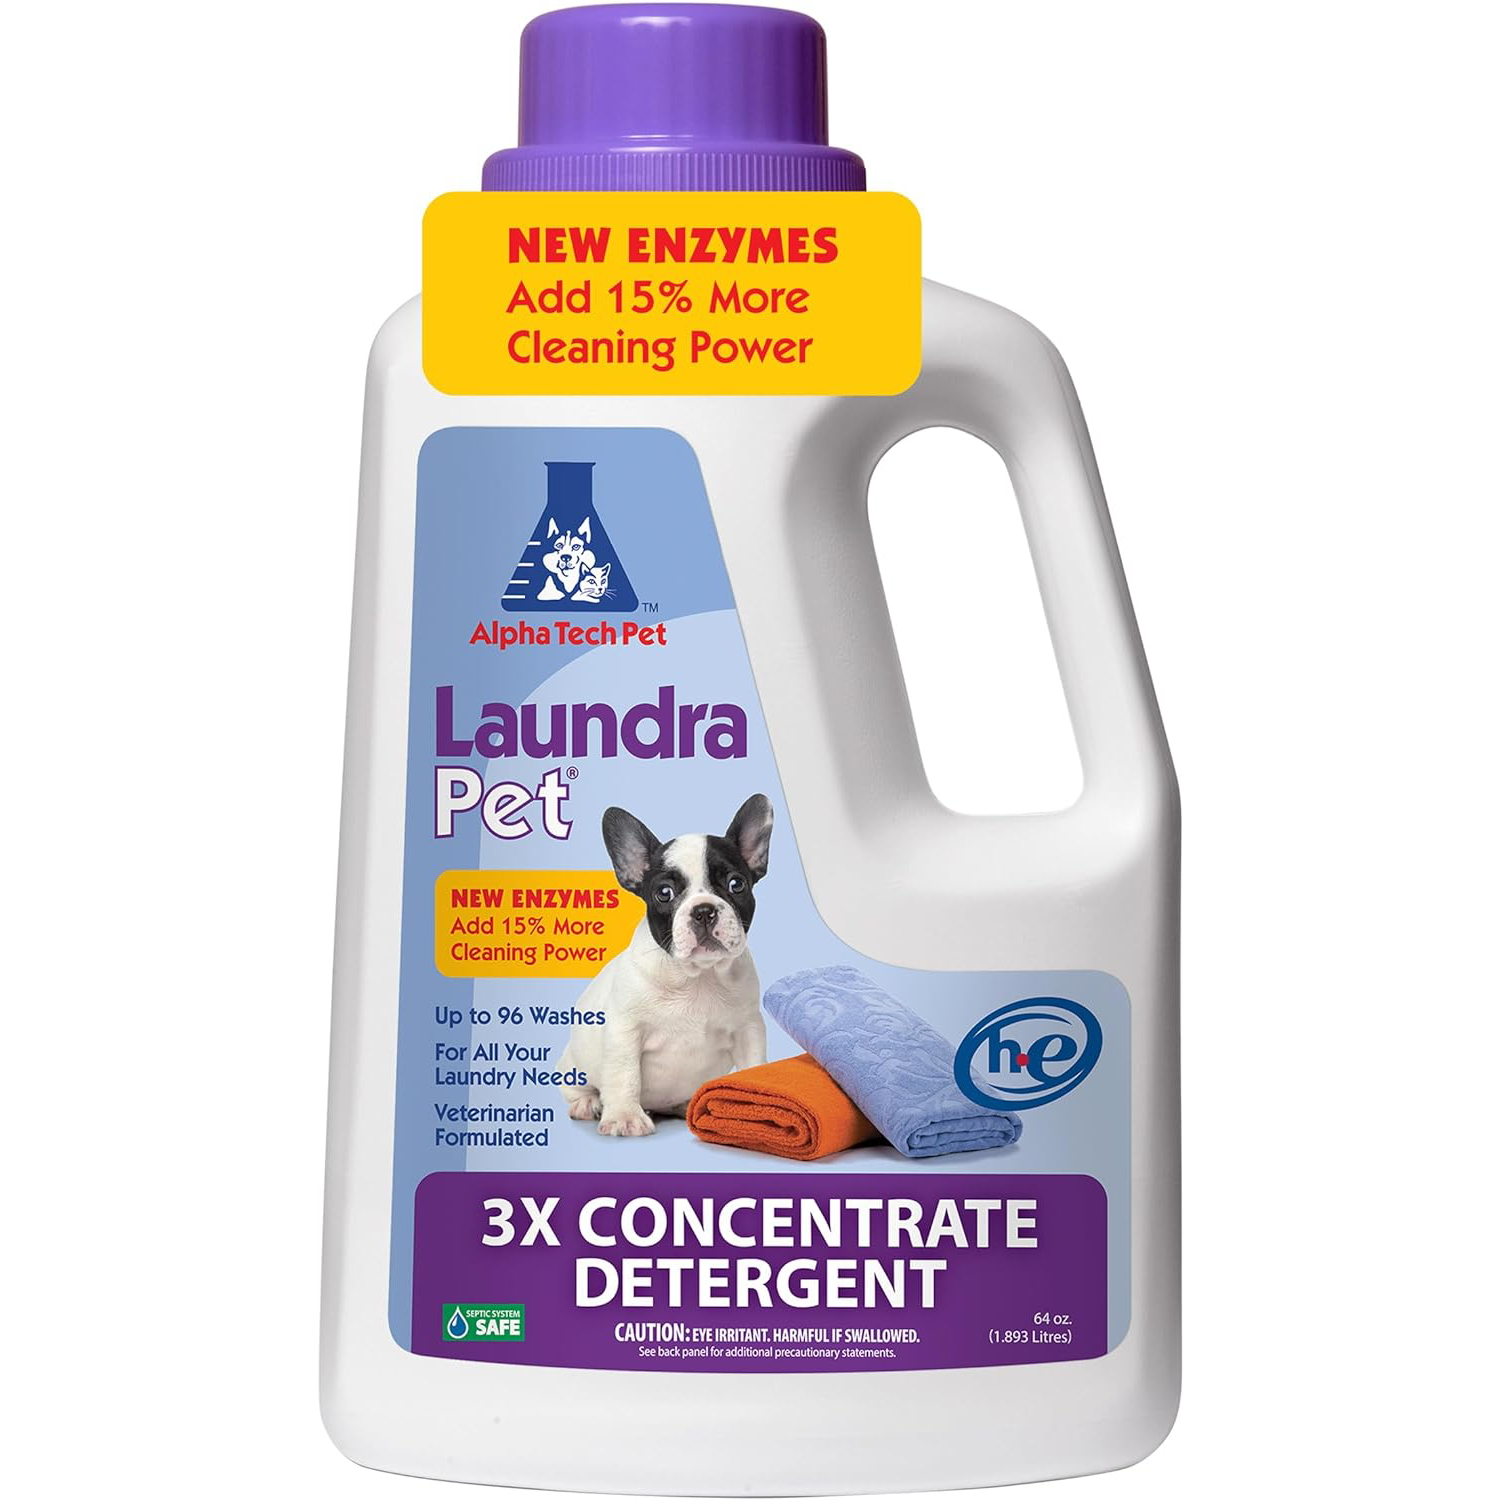 LaundraPet Premium Laundry Detergent